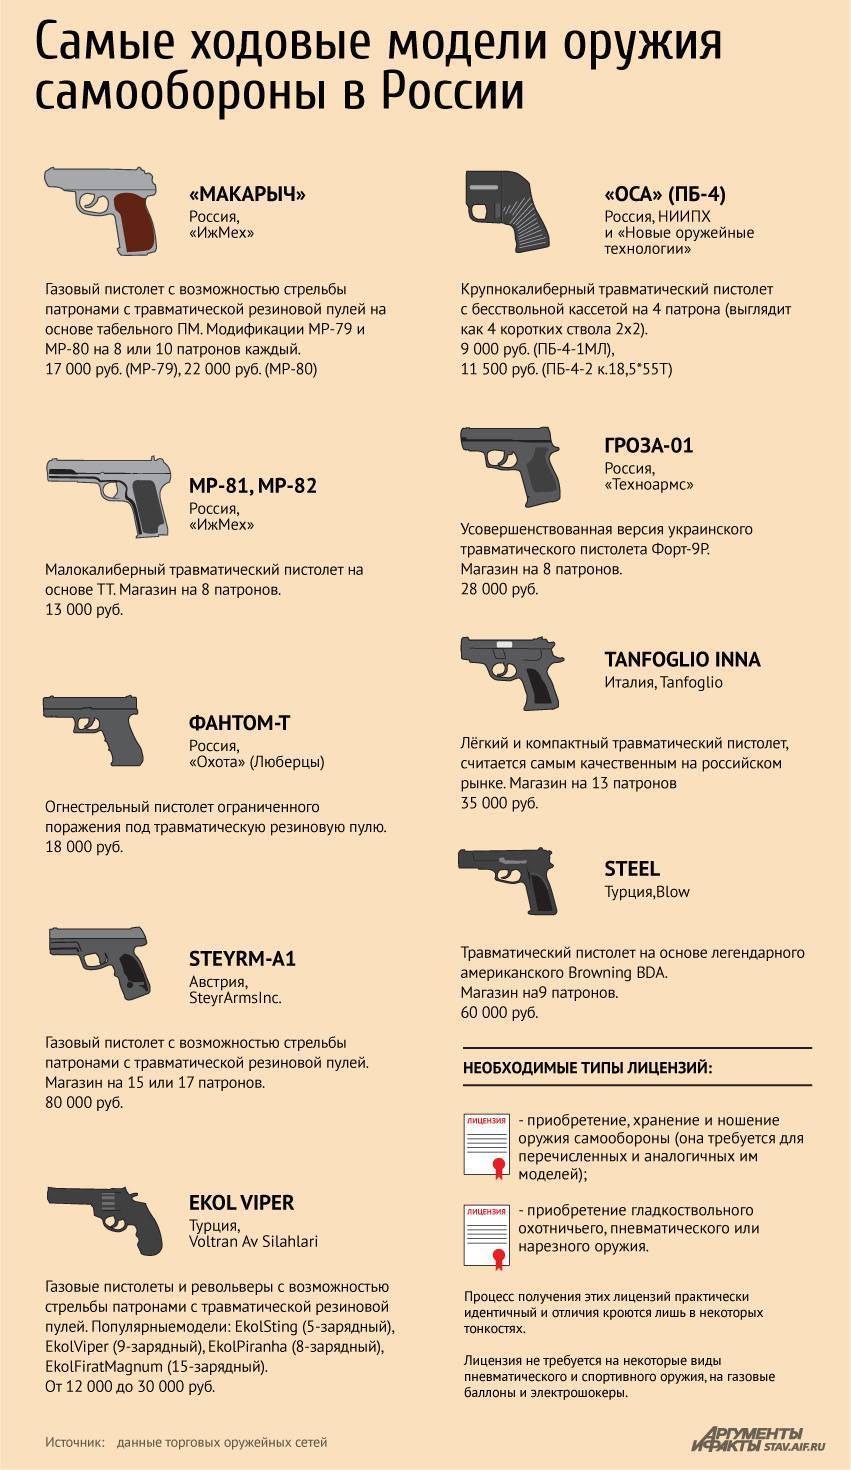 Нужно ли разрешение на травматический пистолет — можно ли купить без лицензии в россии? какая ответственность за ношение травматического пистолета без разрешения в  2020 году?